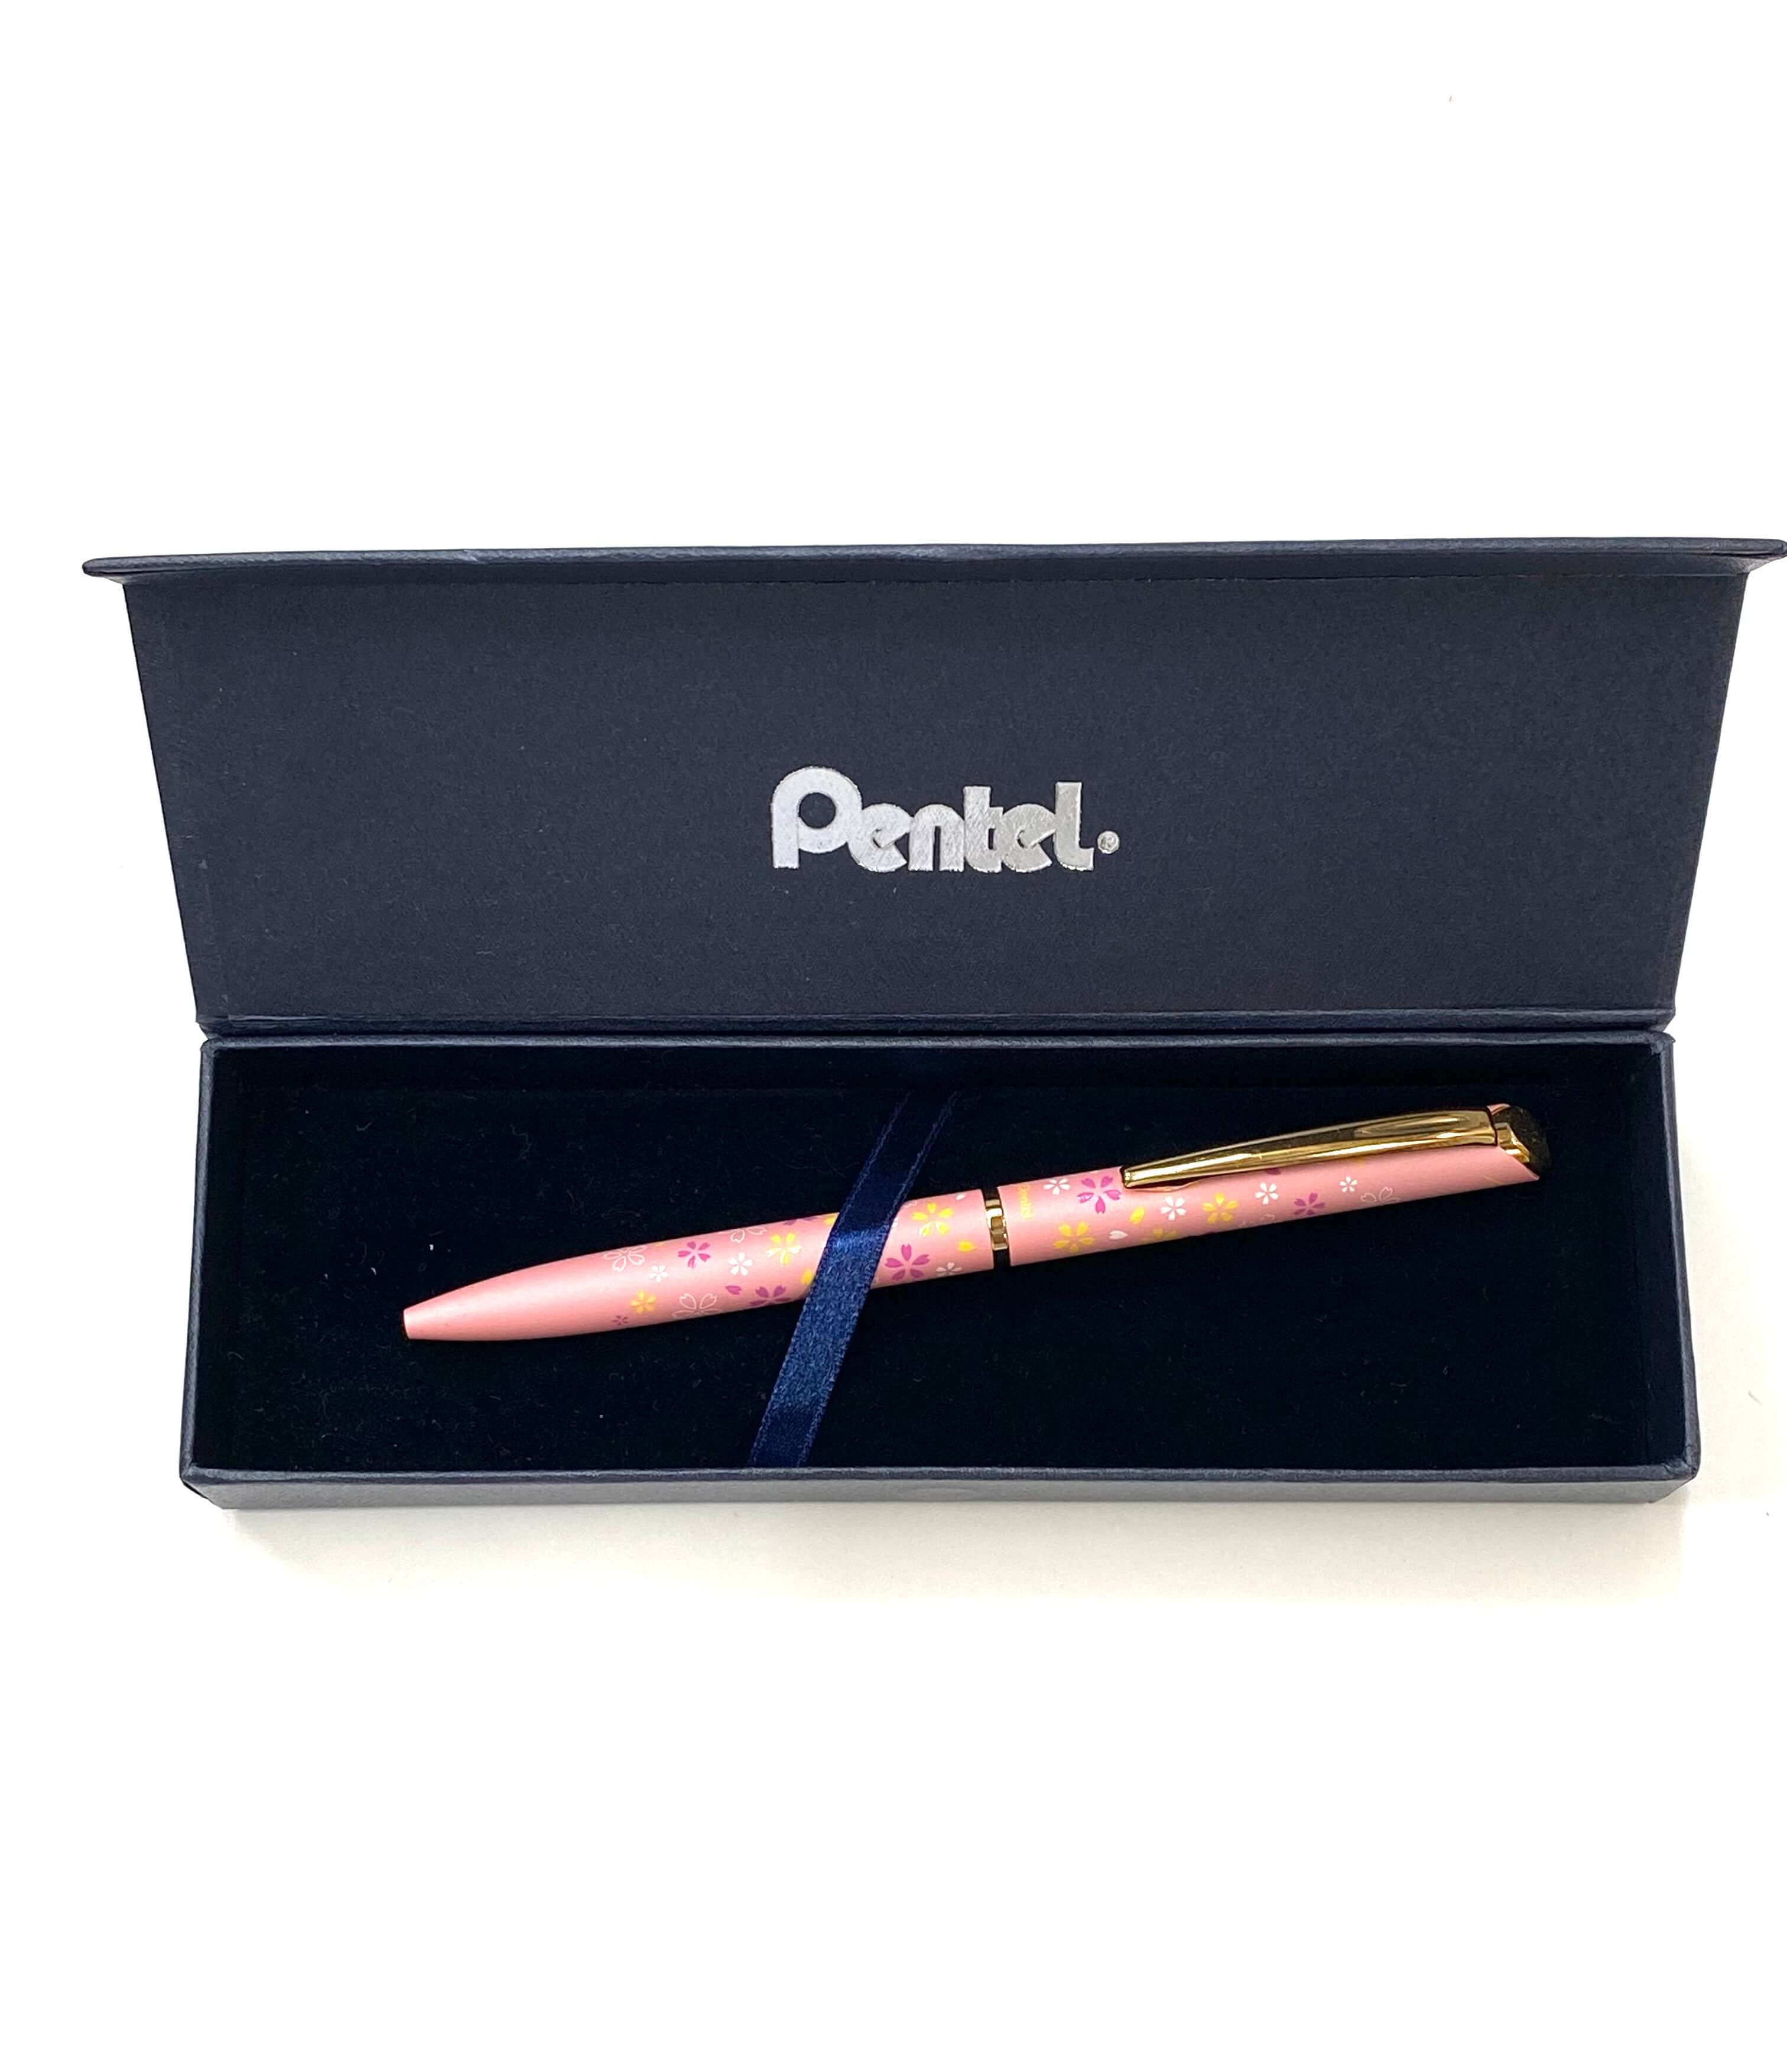 Pentel pink ball pen